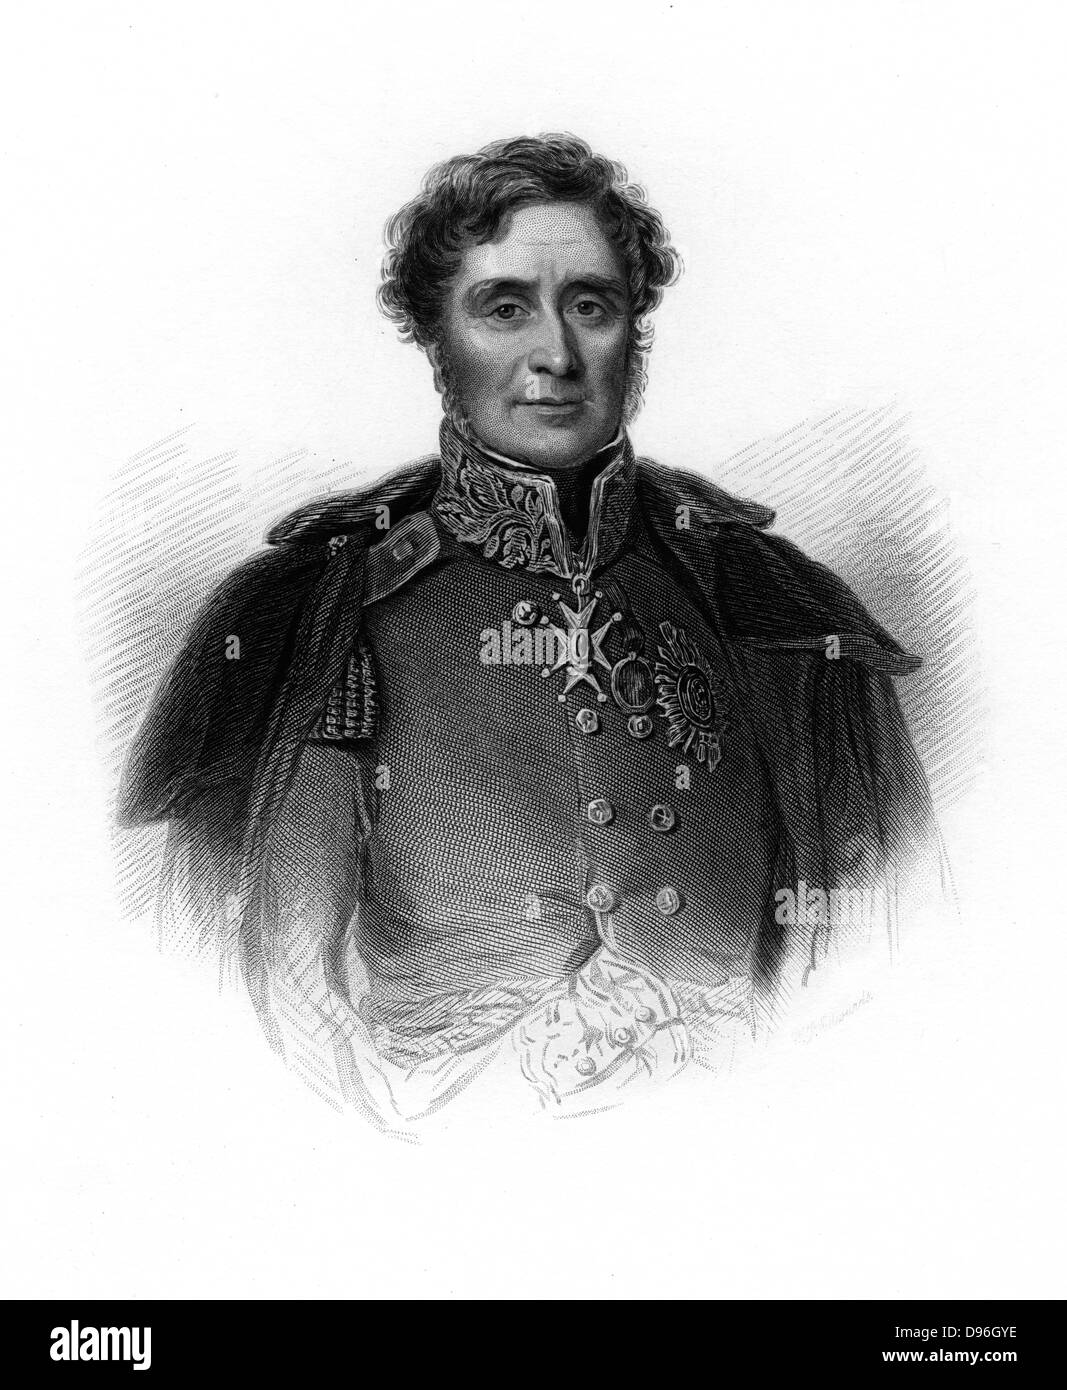 James Henry Fitzroy Somerset, 1er baron Raglan (1788-1855) soldat anglais, c1860. Le maréchal de guerre de Crimée guerre russo-turque (1853-1856) : Il a été victorieux à la bataille de l'Alma, mais à Balaclava donne l'ordre de "suicidaire" la charge de la Brigade légère. La gravure. Banque D'Images